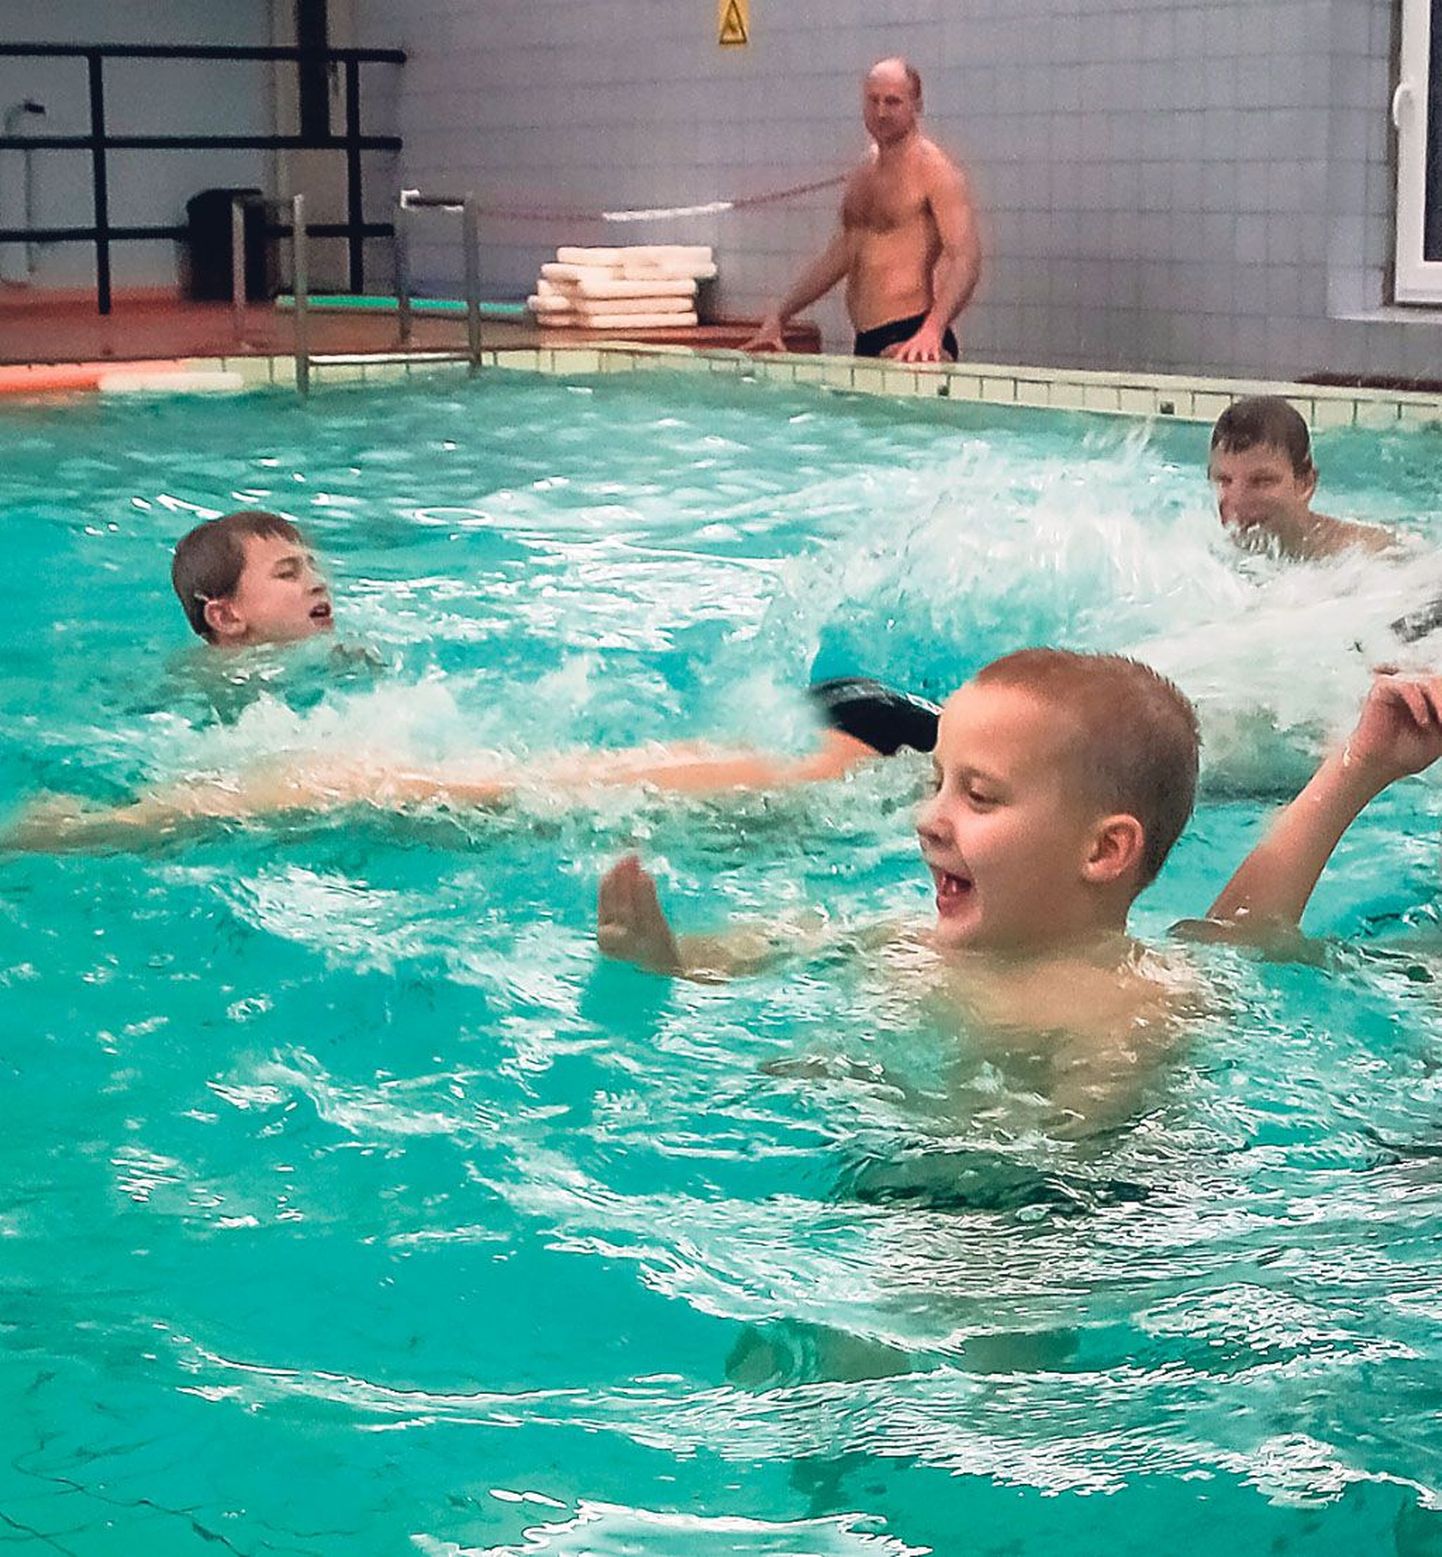 Südatalvisest ujumisvõimalusest tunnevad lapsed rõõmu, see väljendub nende nägudelgi.